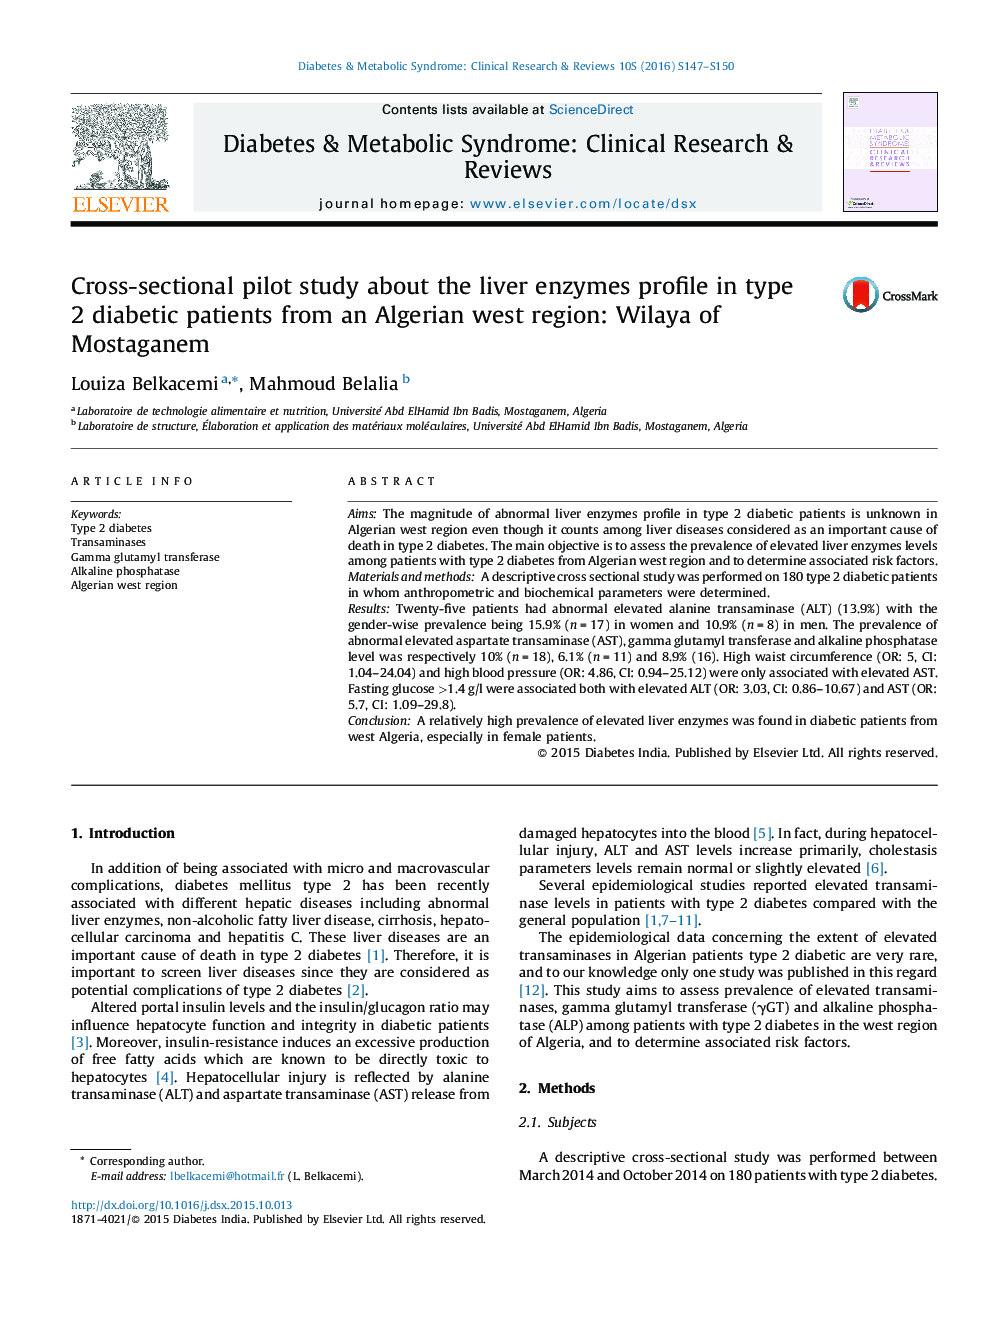 مطالعهی آزمایشی مقطعی درباره نمایه آنزیم‌های کبدی در بیماران مبتلا به دیابت نوع 2 از منطقه غرب الجزایر: ویلایای مستغانم